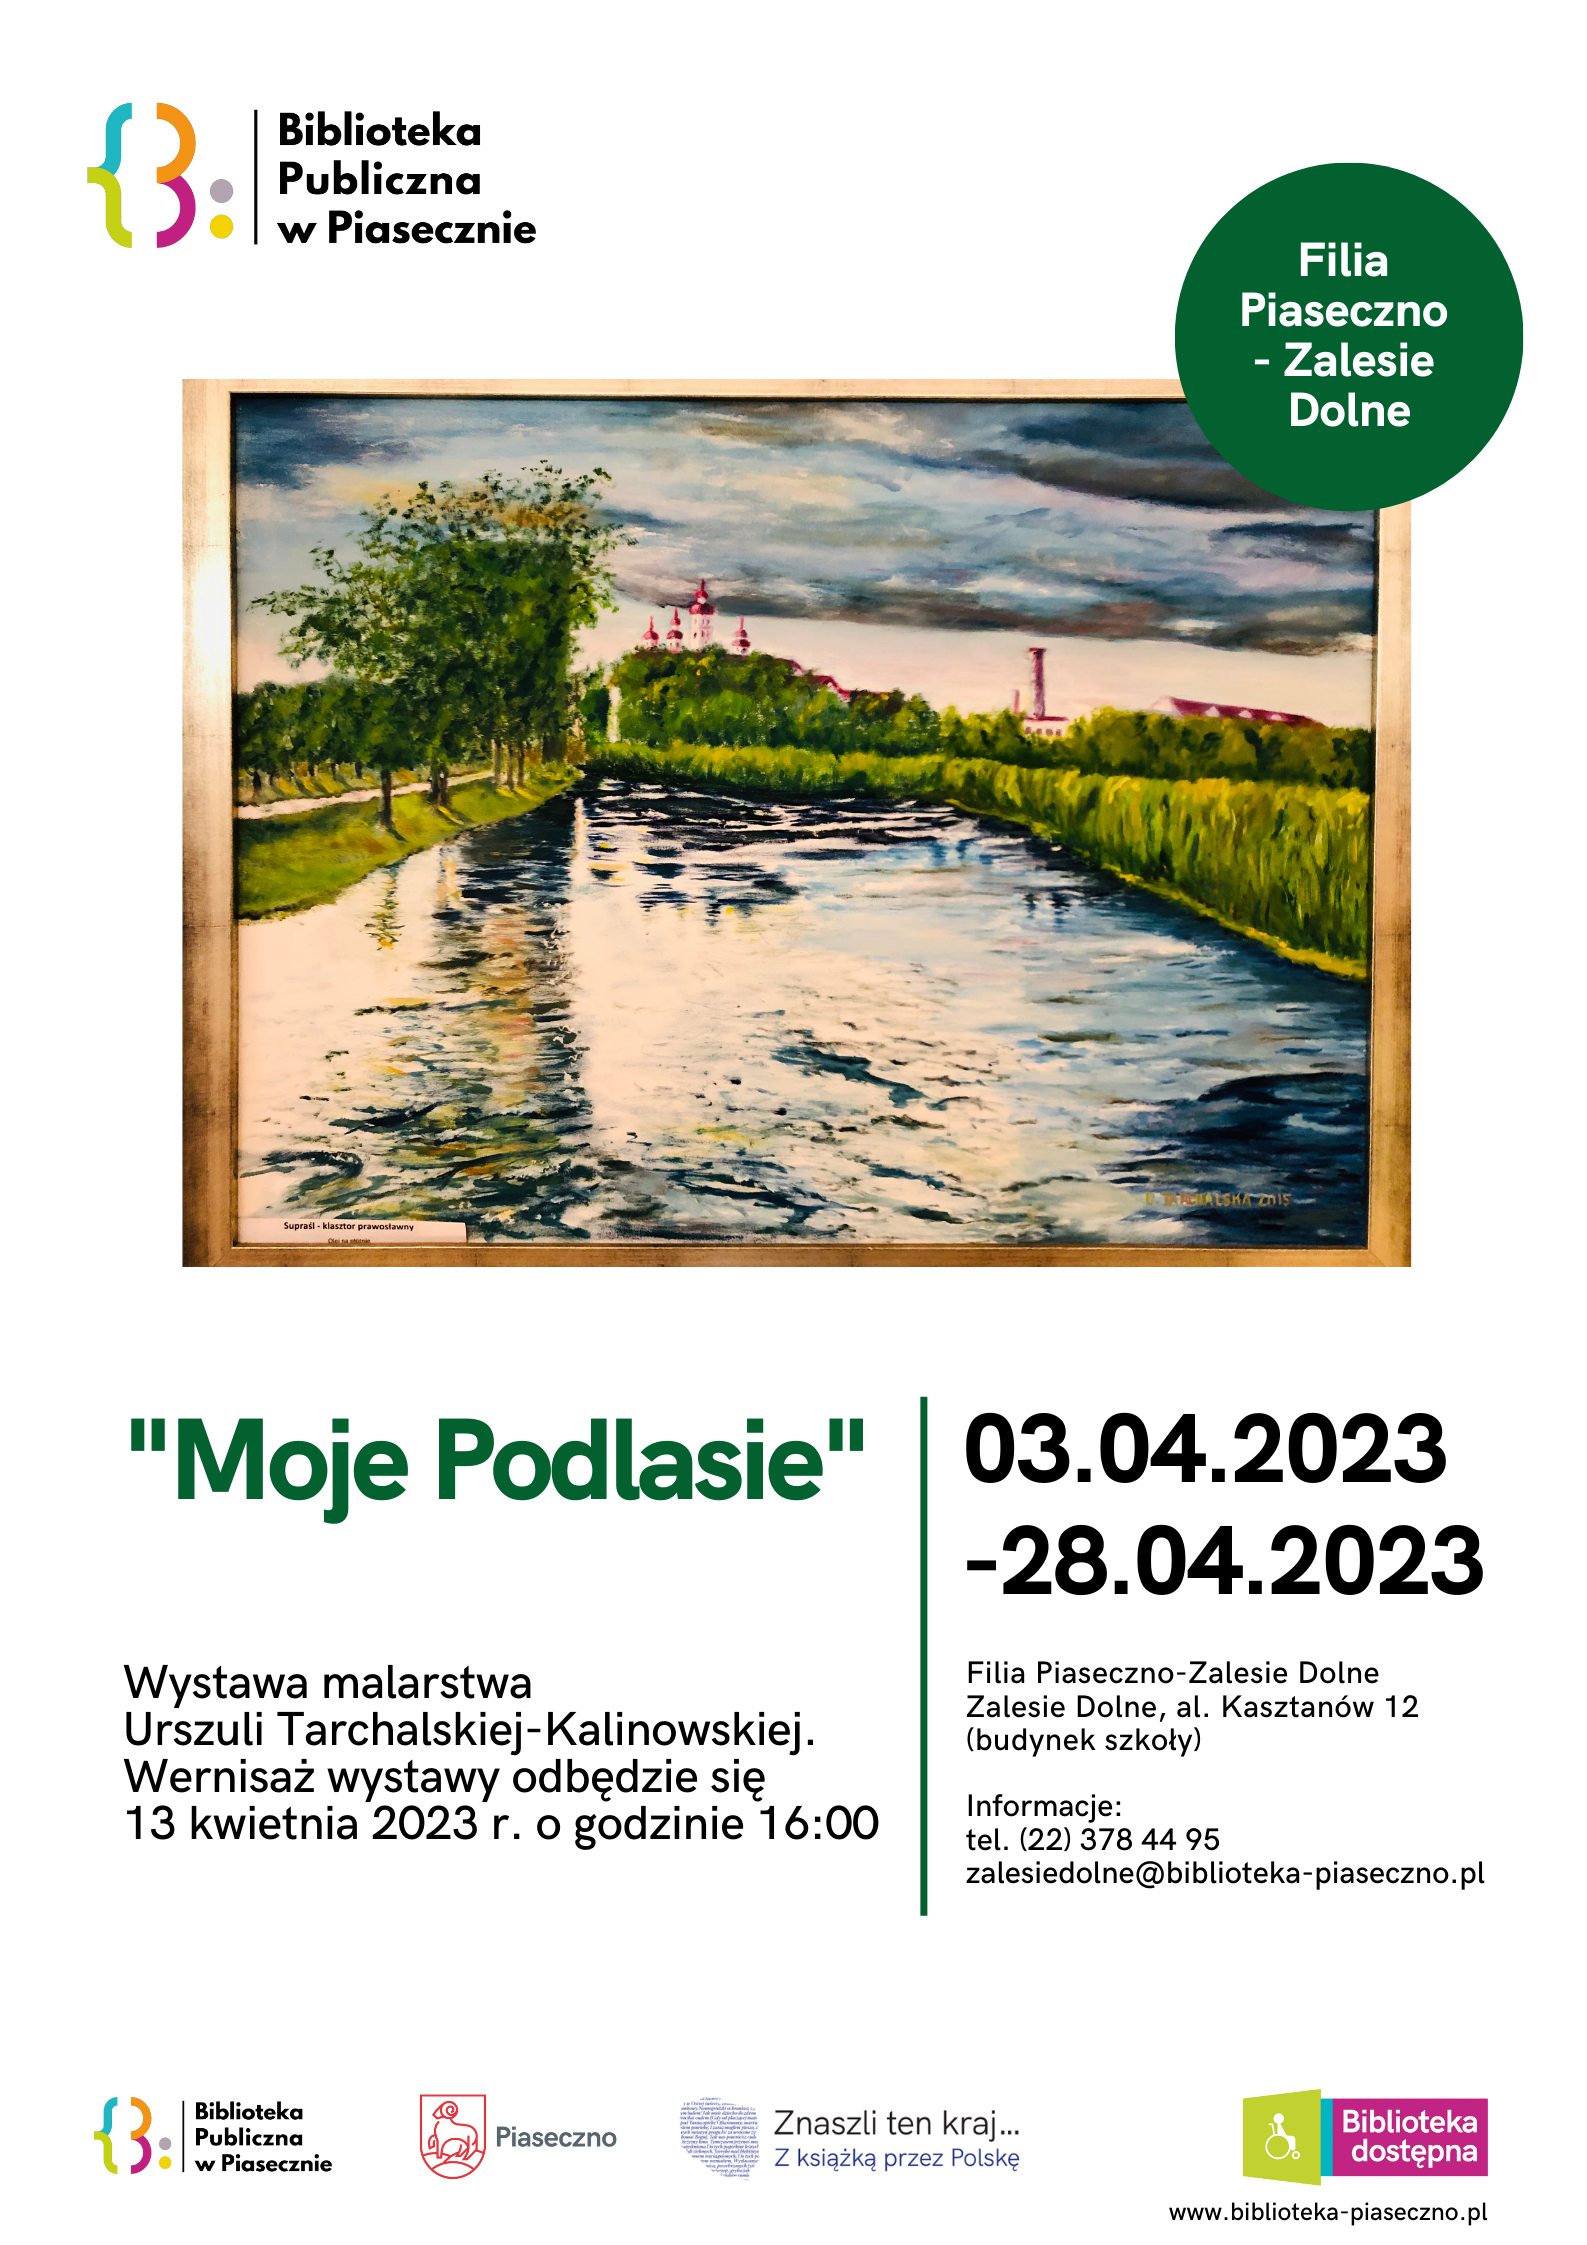 Plakat promujący wystawę malarstwa Urszuli Tarchalskiej-Kalinowskiej "Moje Podlasie"